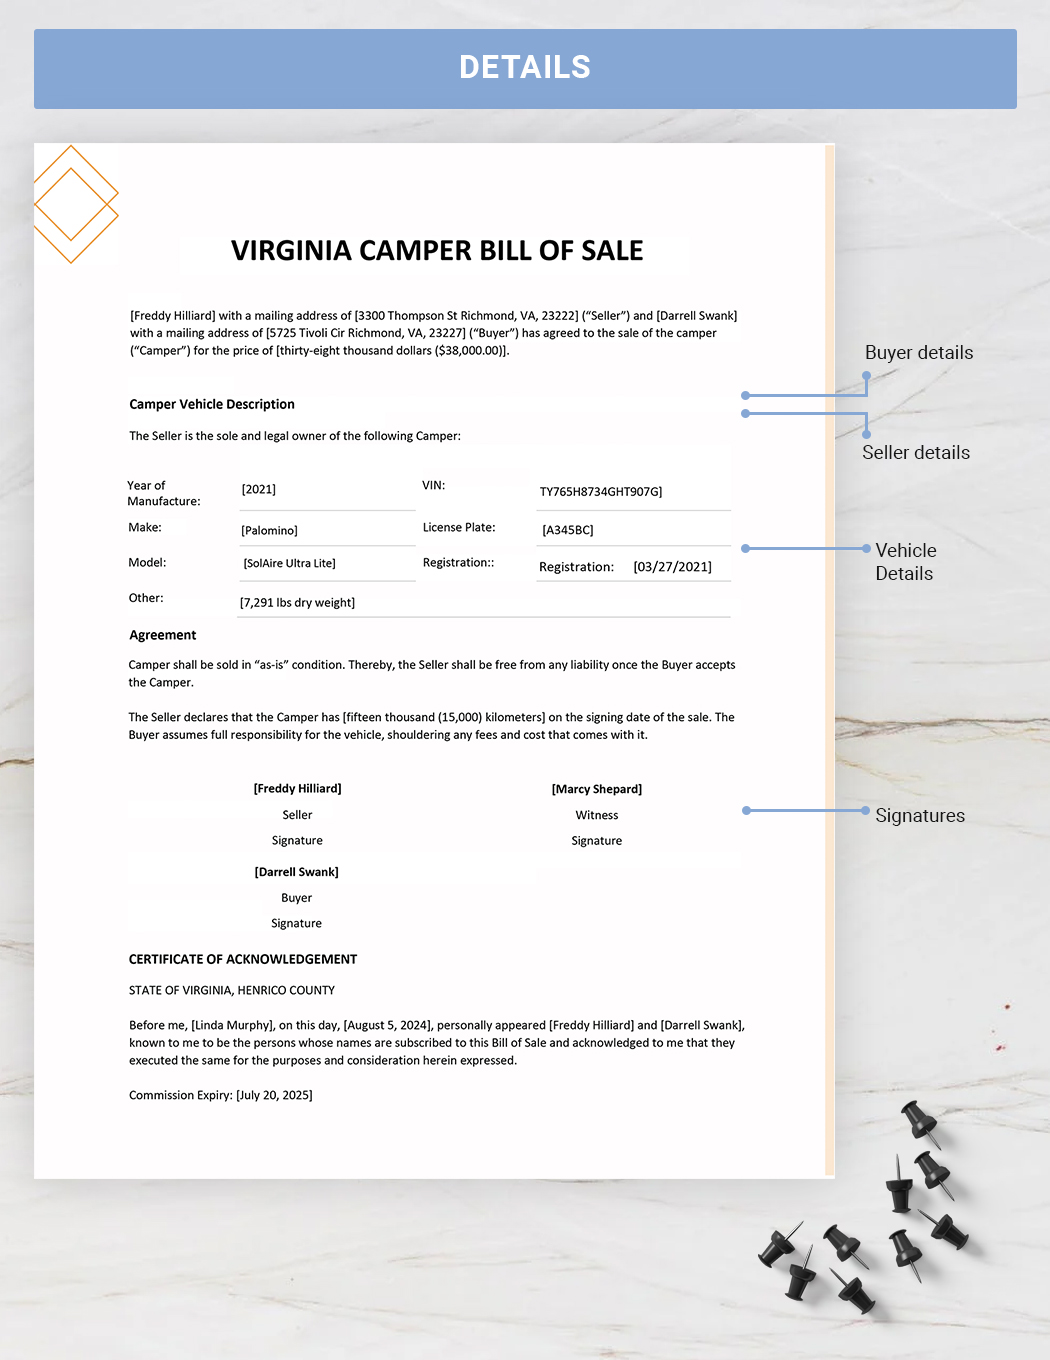 Virginia Camper Bill of Sale Template